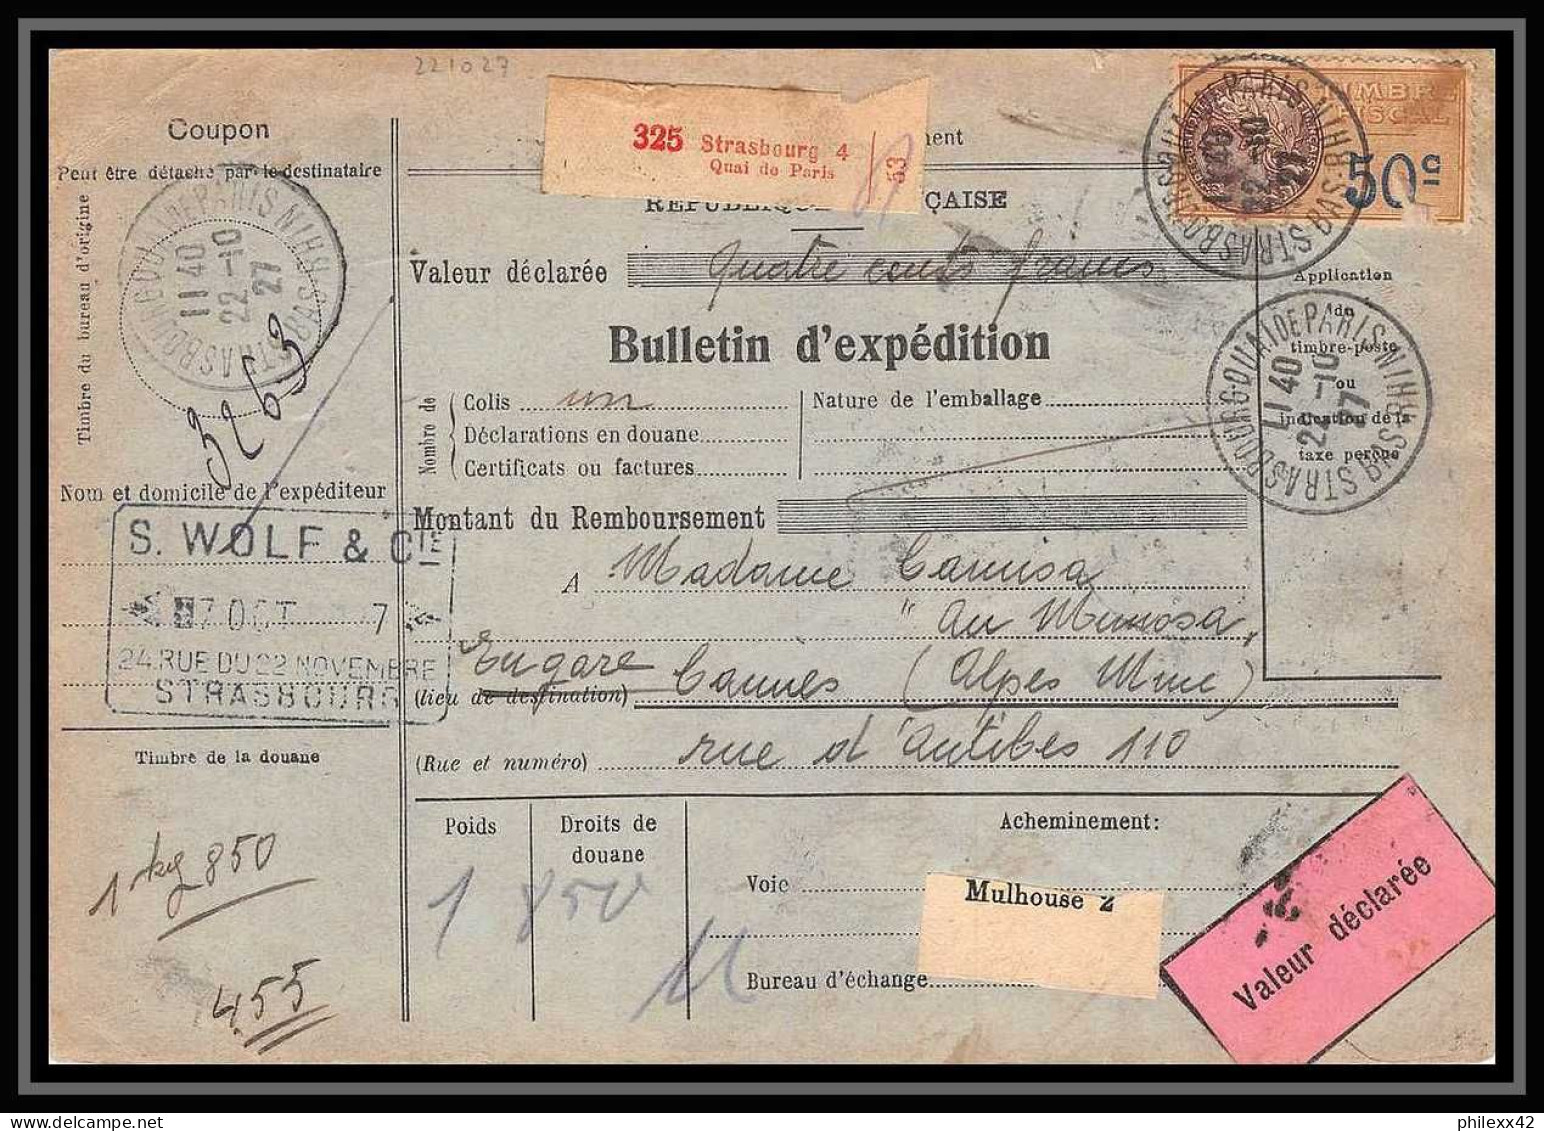 25228/ Bulletin D'expédition France Colis Postaux Fiscal Strasbourg 4 Pour Cannes 1927 Merson N°245 Valeur Déclarée - Brieven & Documenten